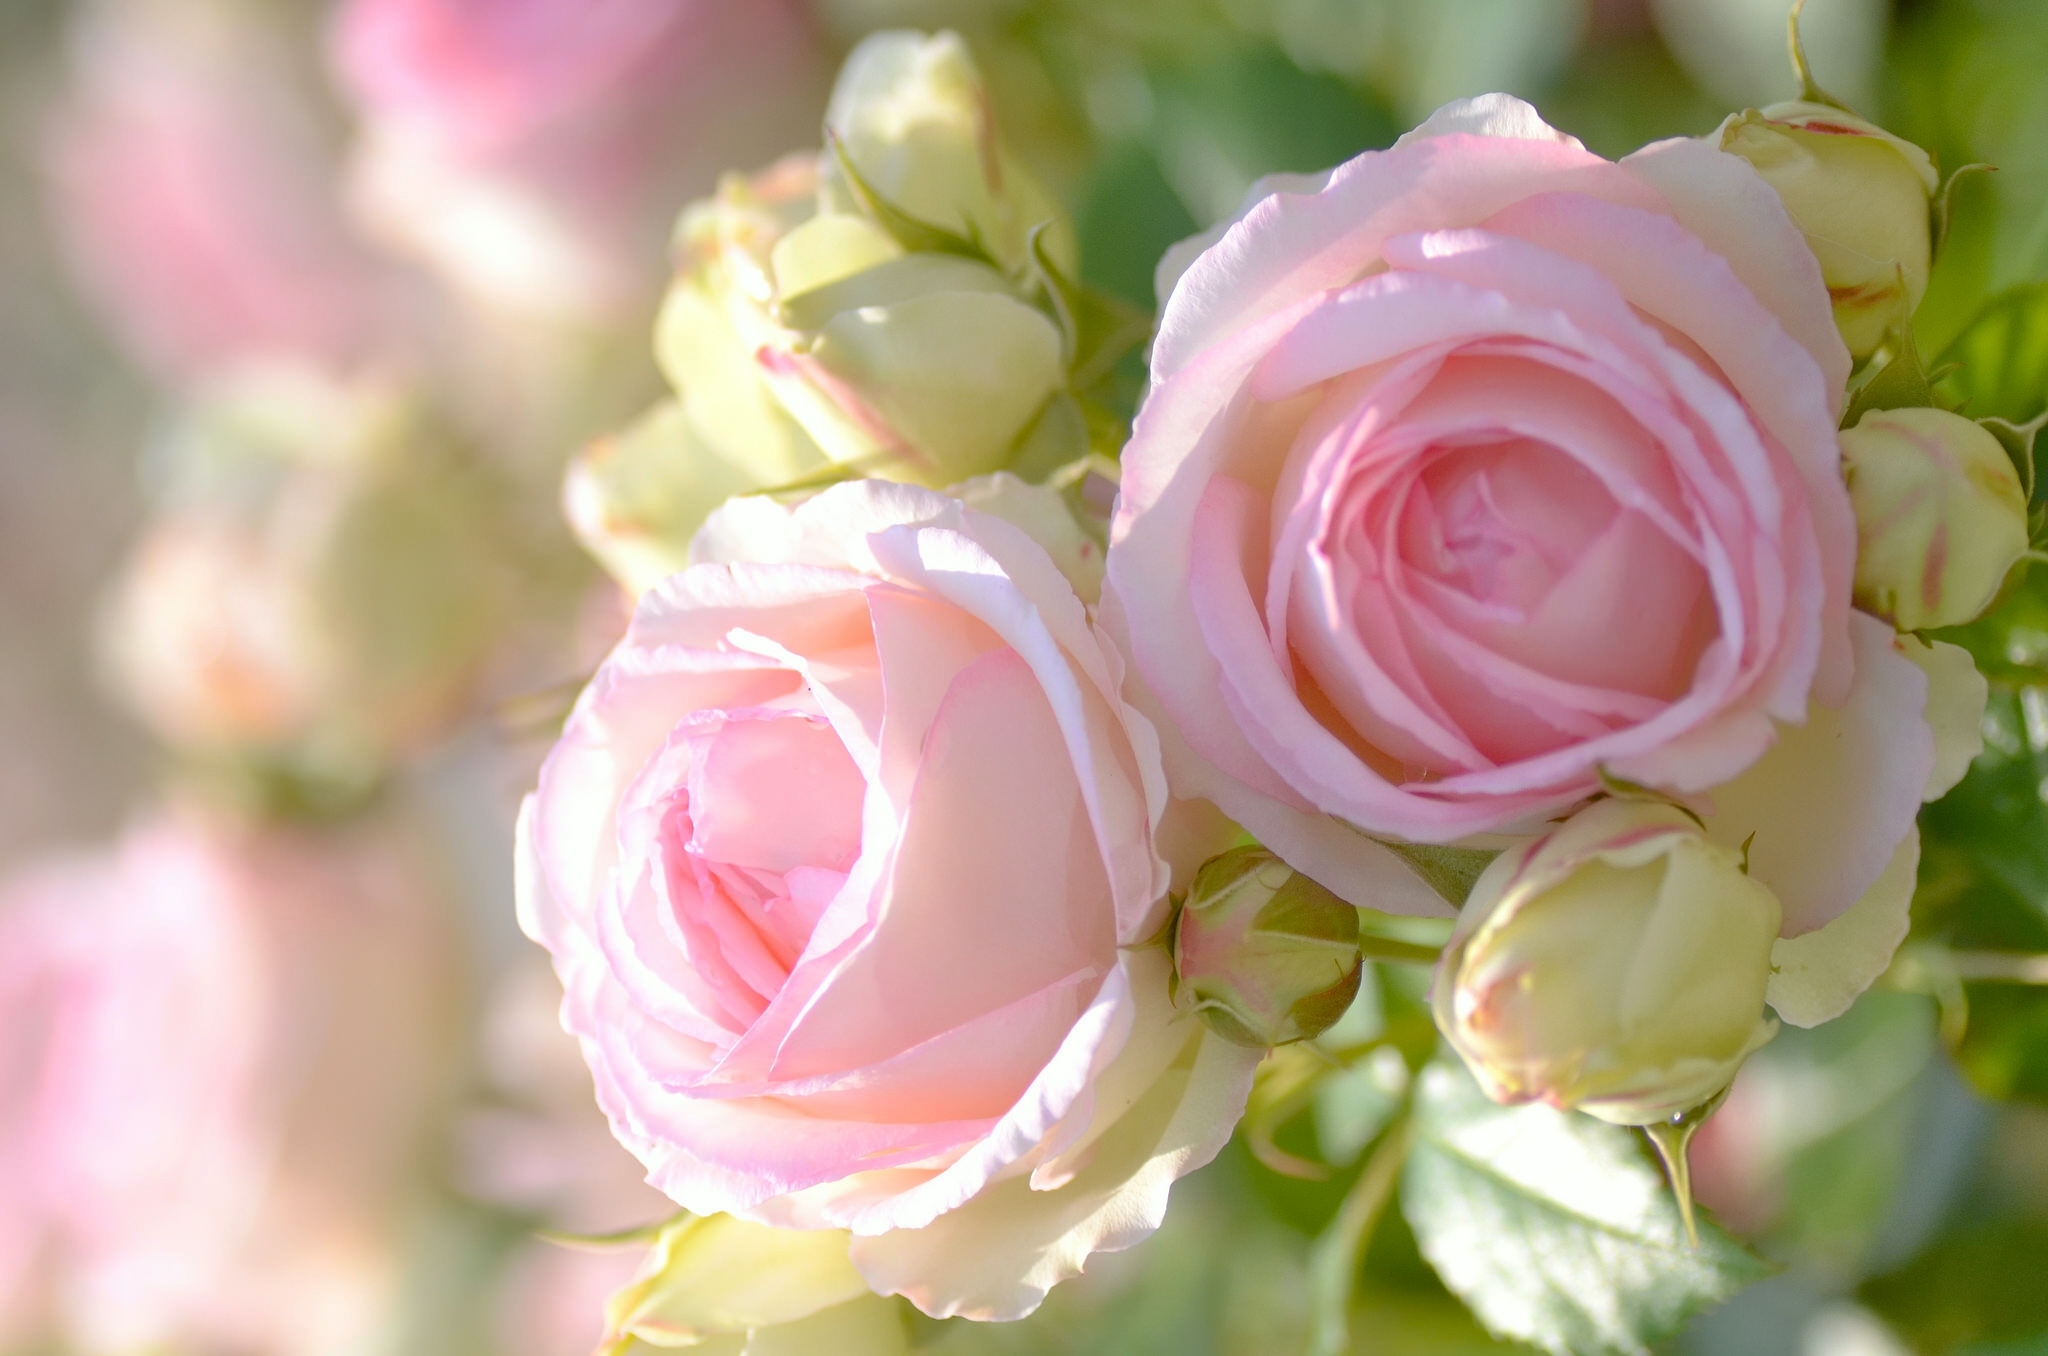 Скачать обои бесплатно Цветок, Роза, Бутон, Лепесток, Земля/природа, Розовая Роза, Флауэрсы картинка на рабочий стол ПК